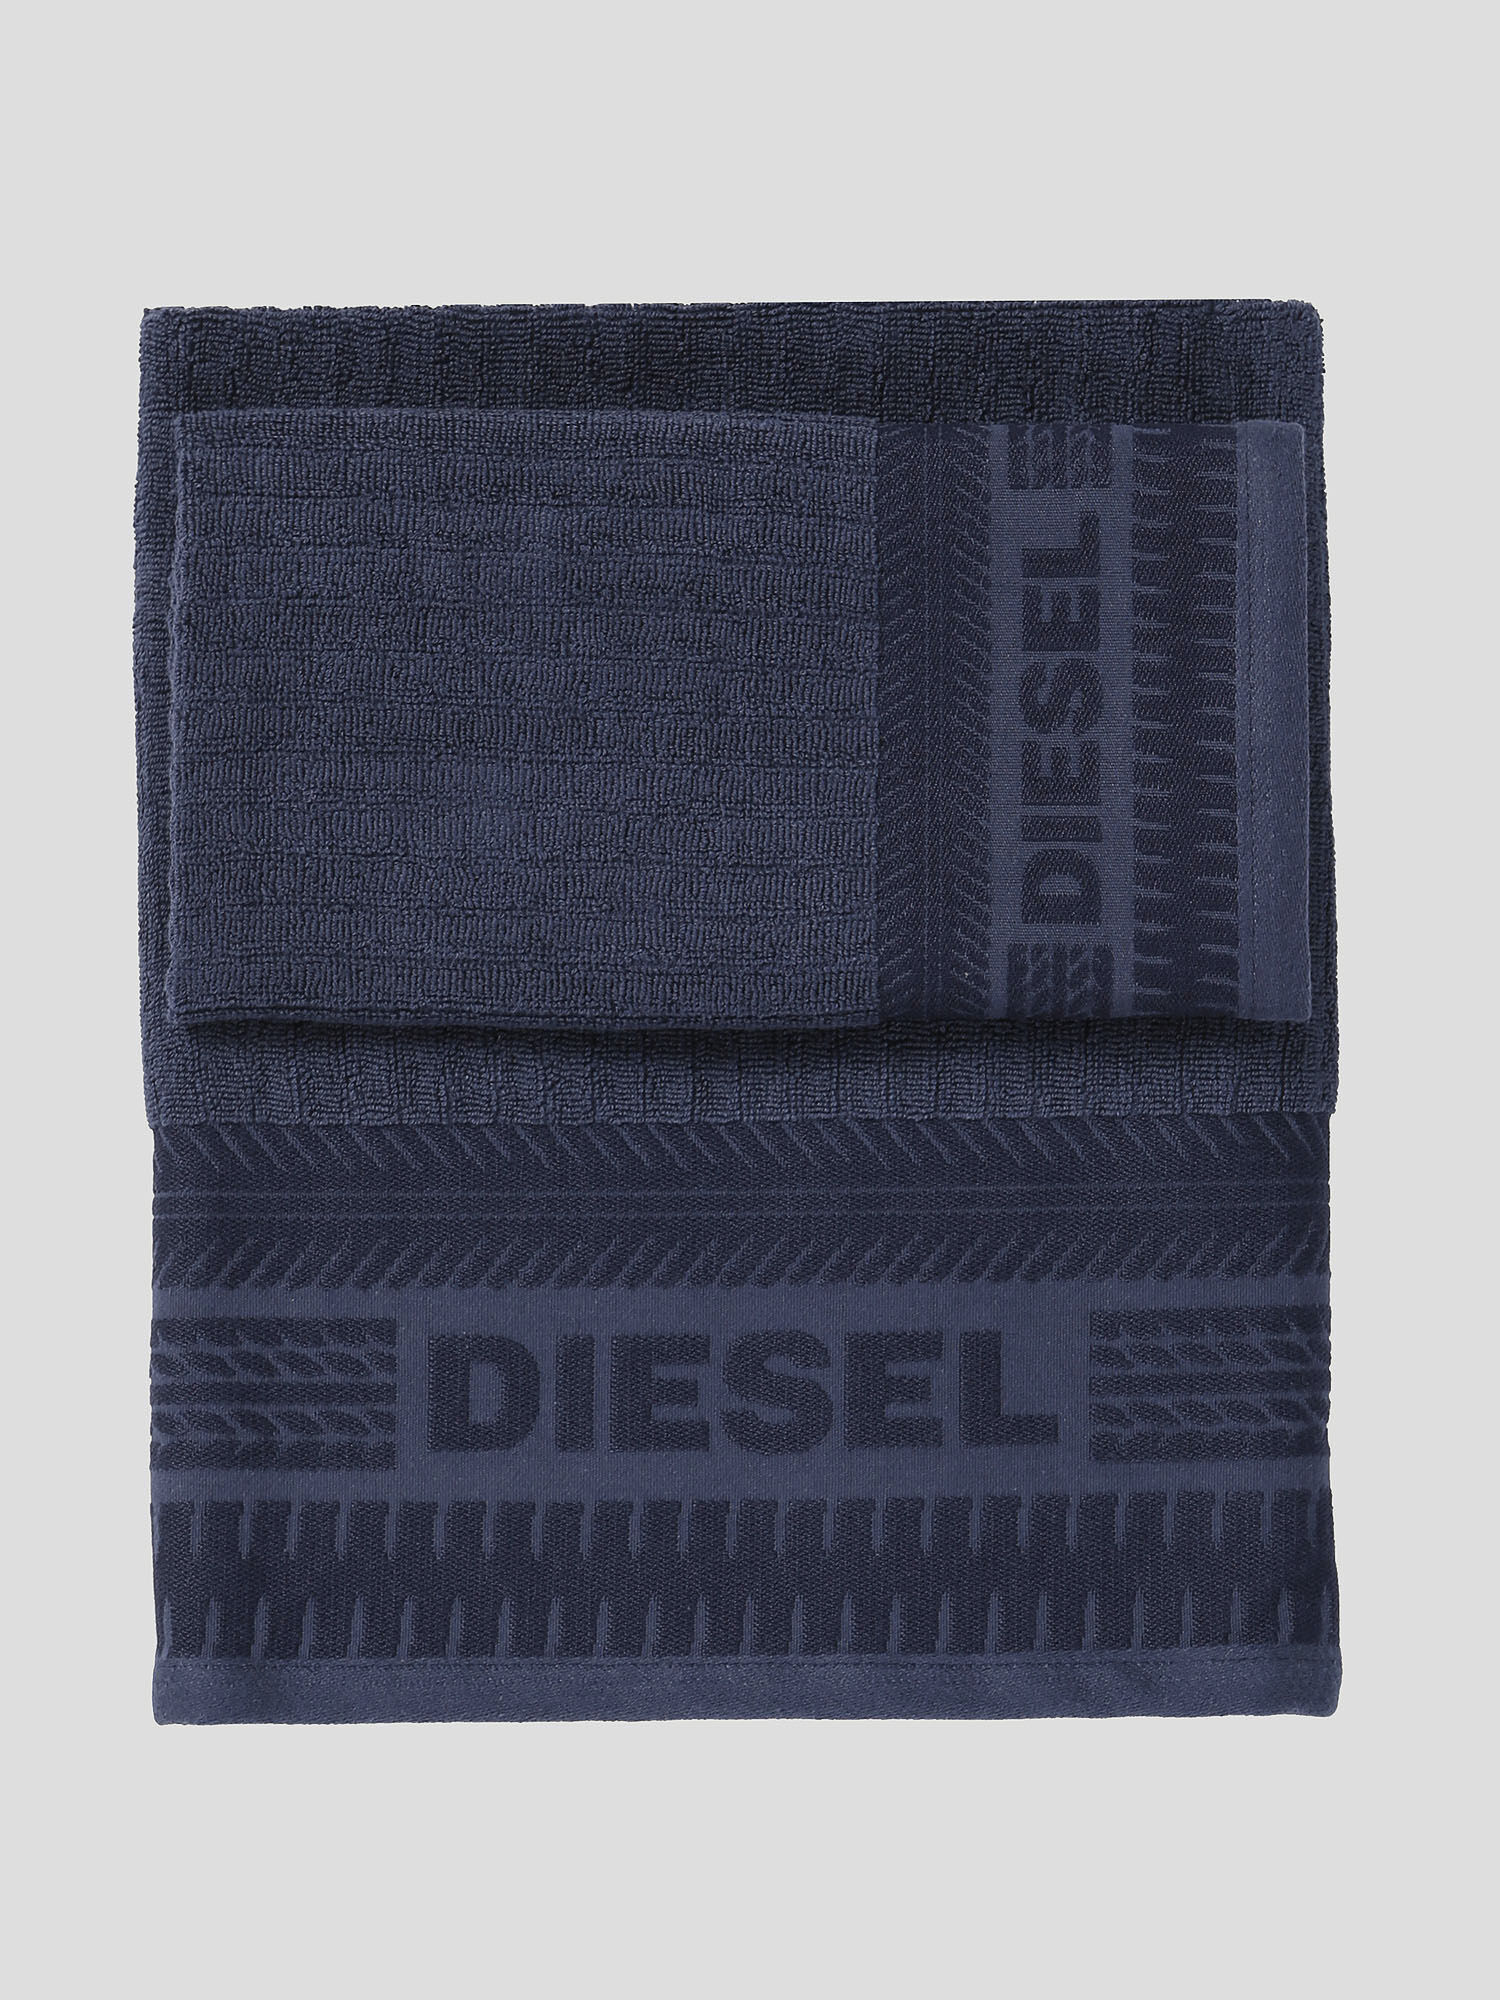 Diesel - 72327 SOLID, Bleu - Image 1